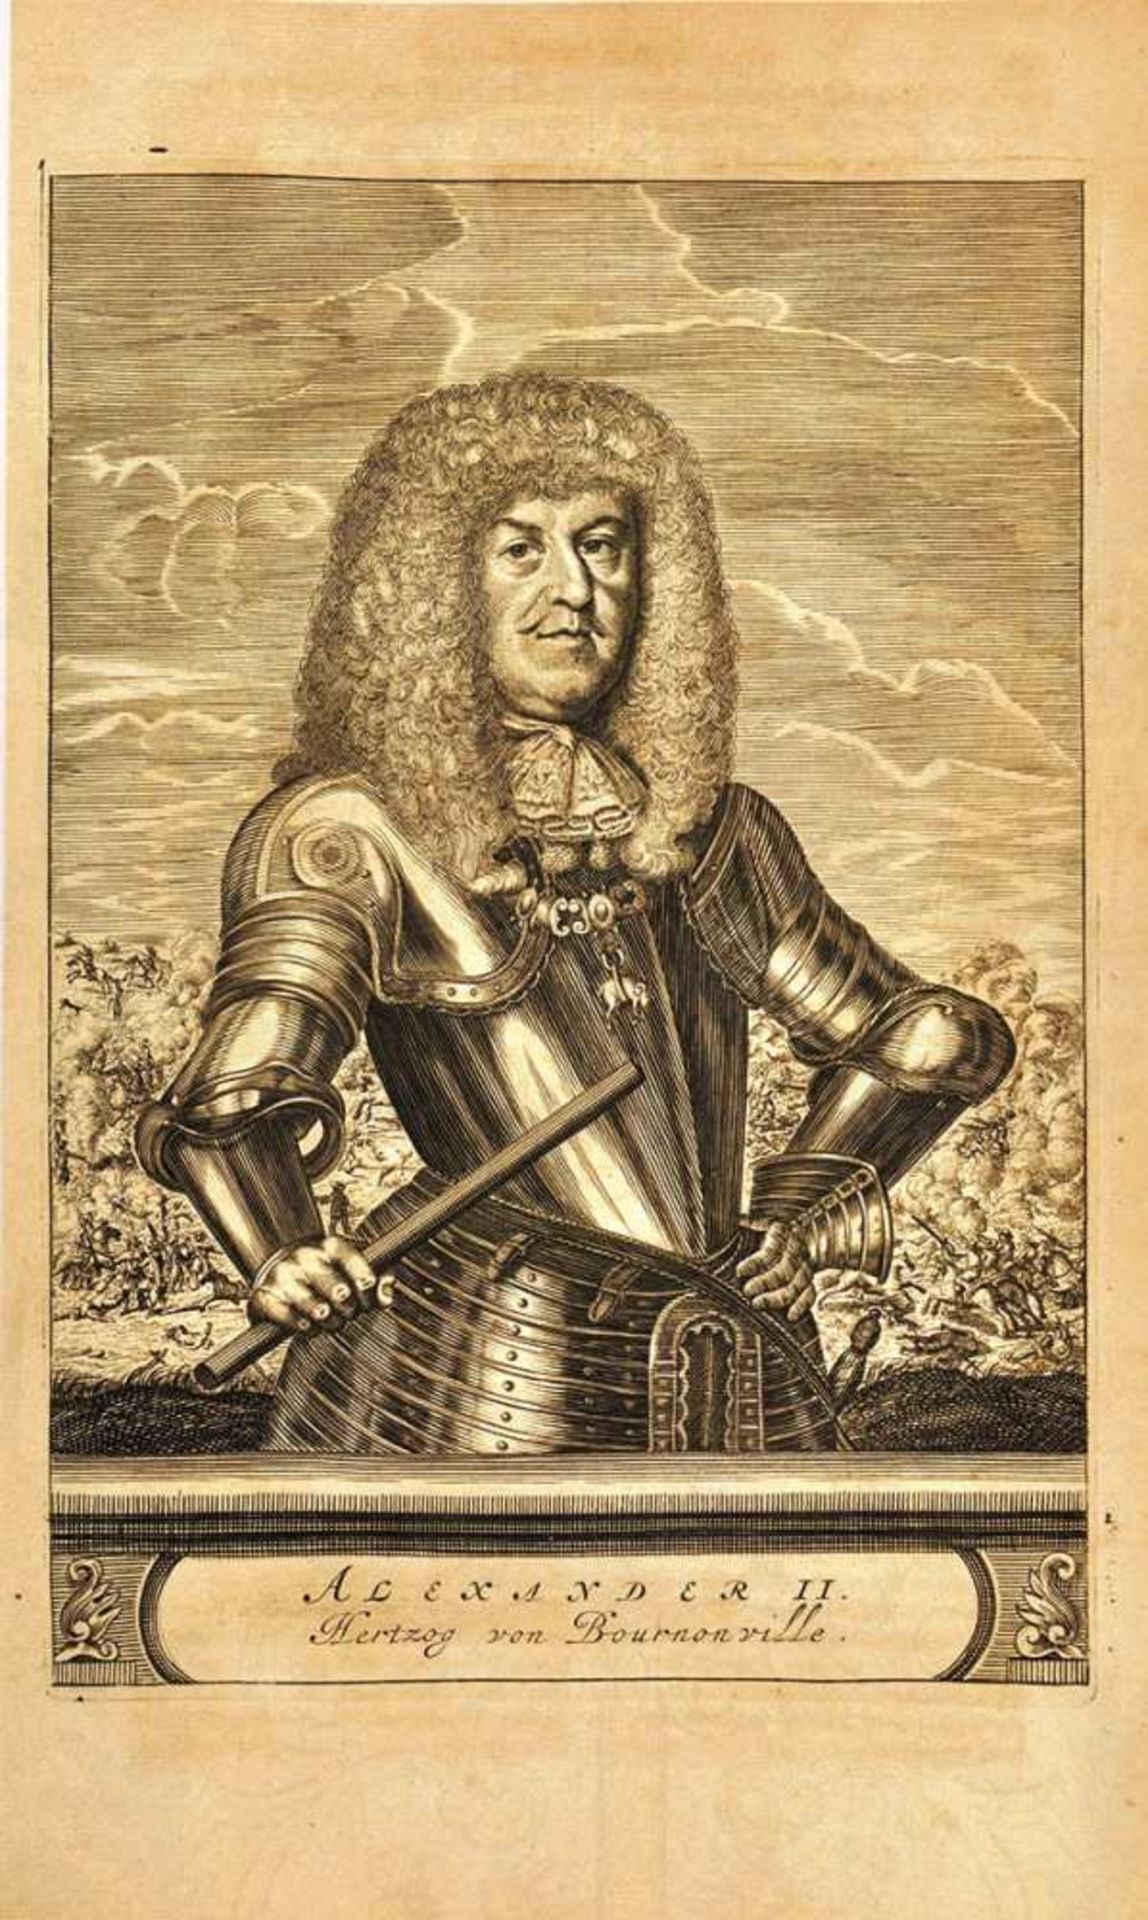 ALEXANDER II., HERZOG VON BOURNONVILLE, (1616-1690, Kaiserlicher u. Spanischer Feldherr),